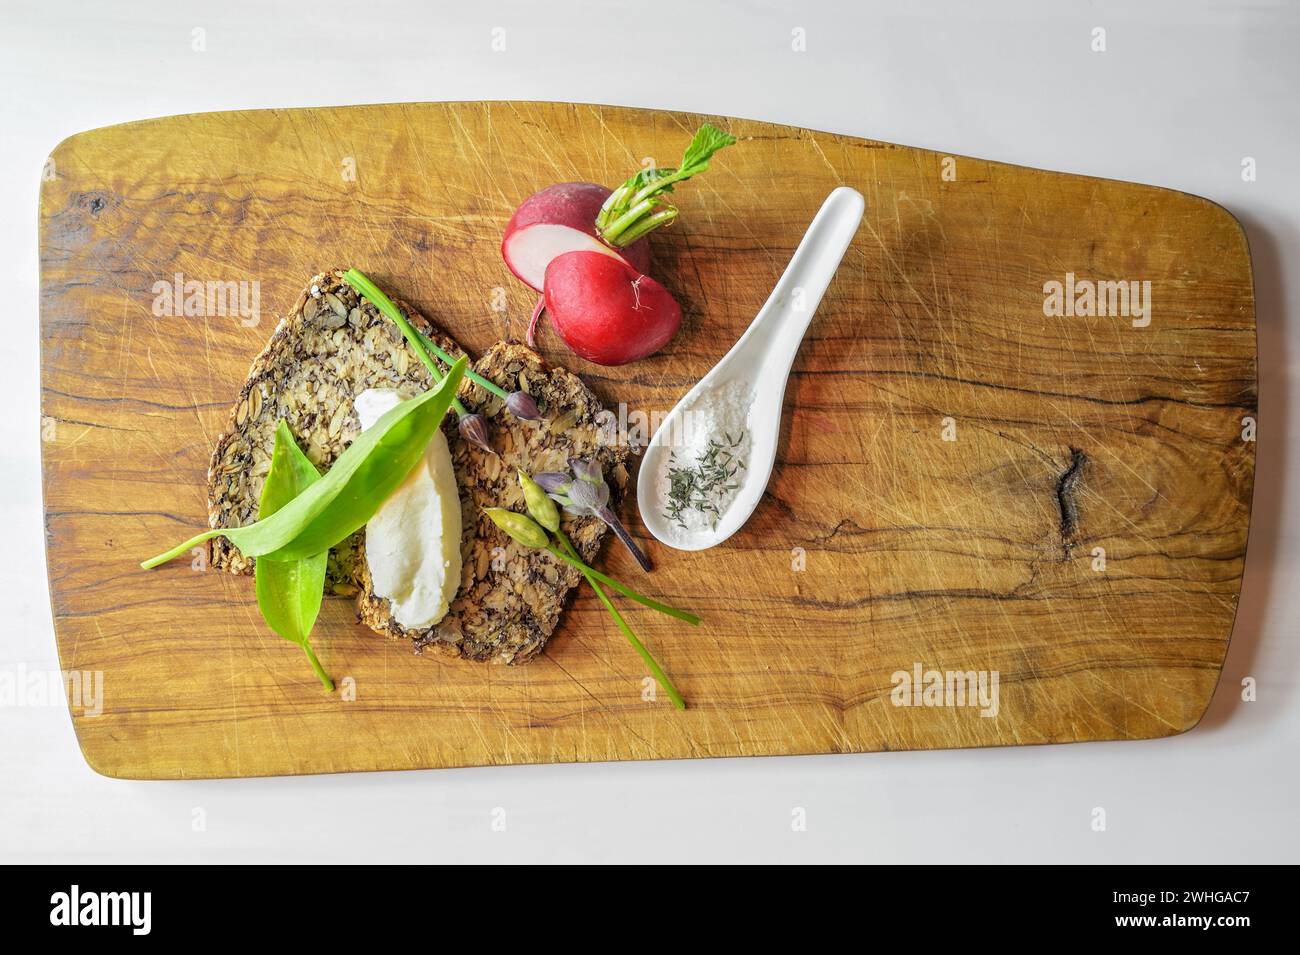 Pane integrale con burro, ravanello, un cucchiaio di sale e aglio selvatico su una tavola rustica di legno, sano pasto naturale, semplice Foto Stock